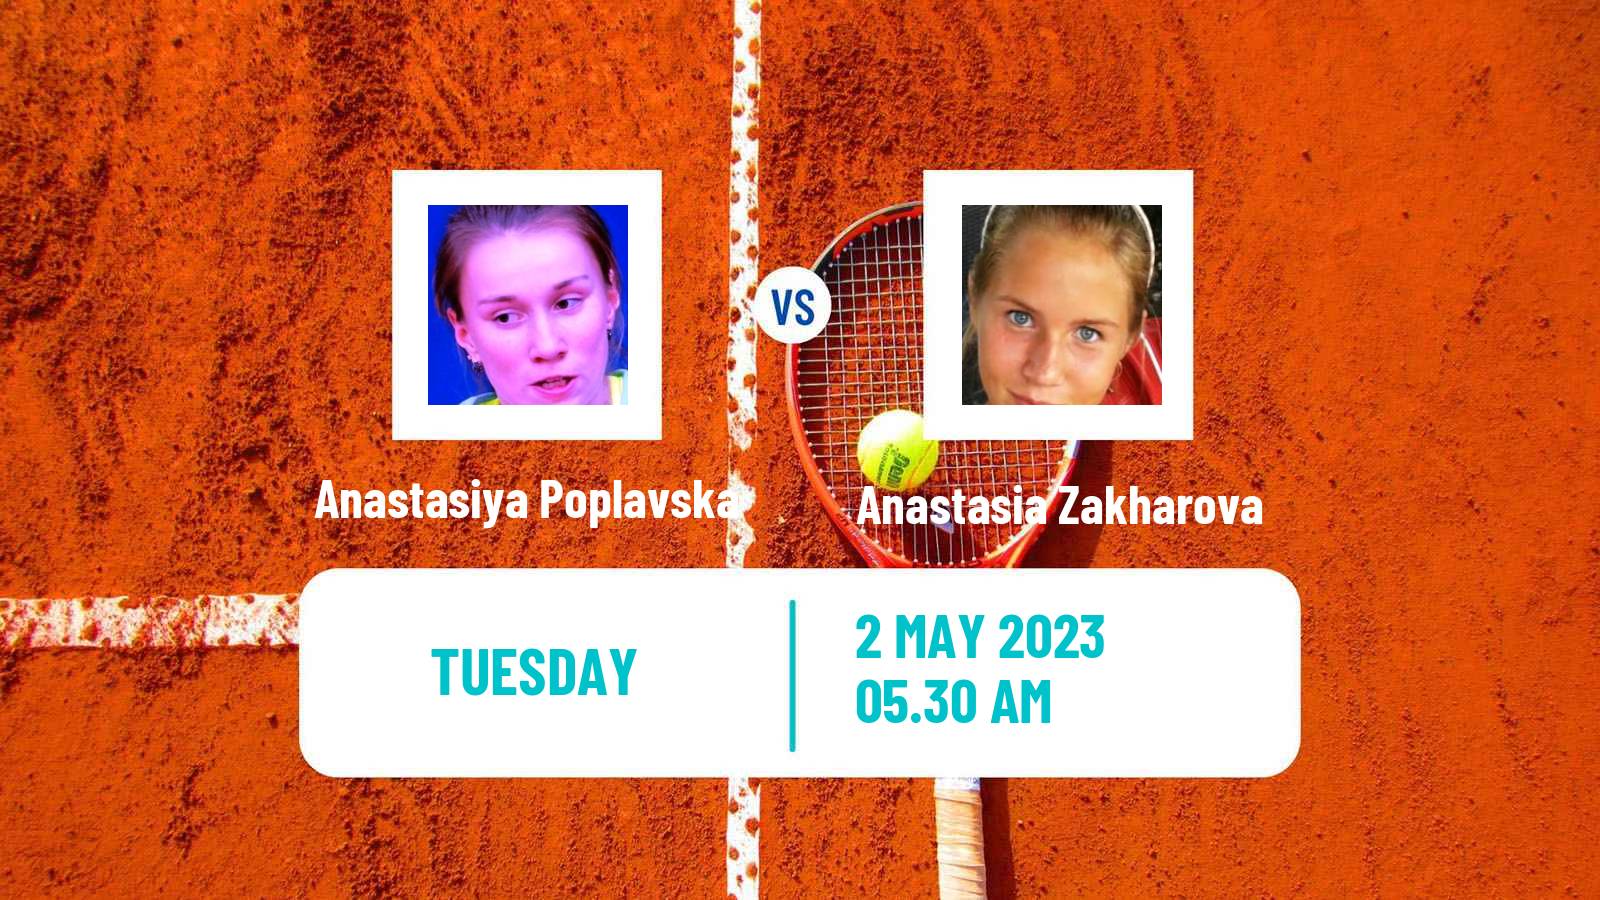 Tennis ITF Tournaments Anastasiya Poplavska - Anastasia Zakharova